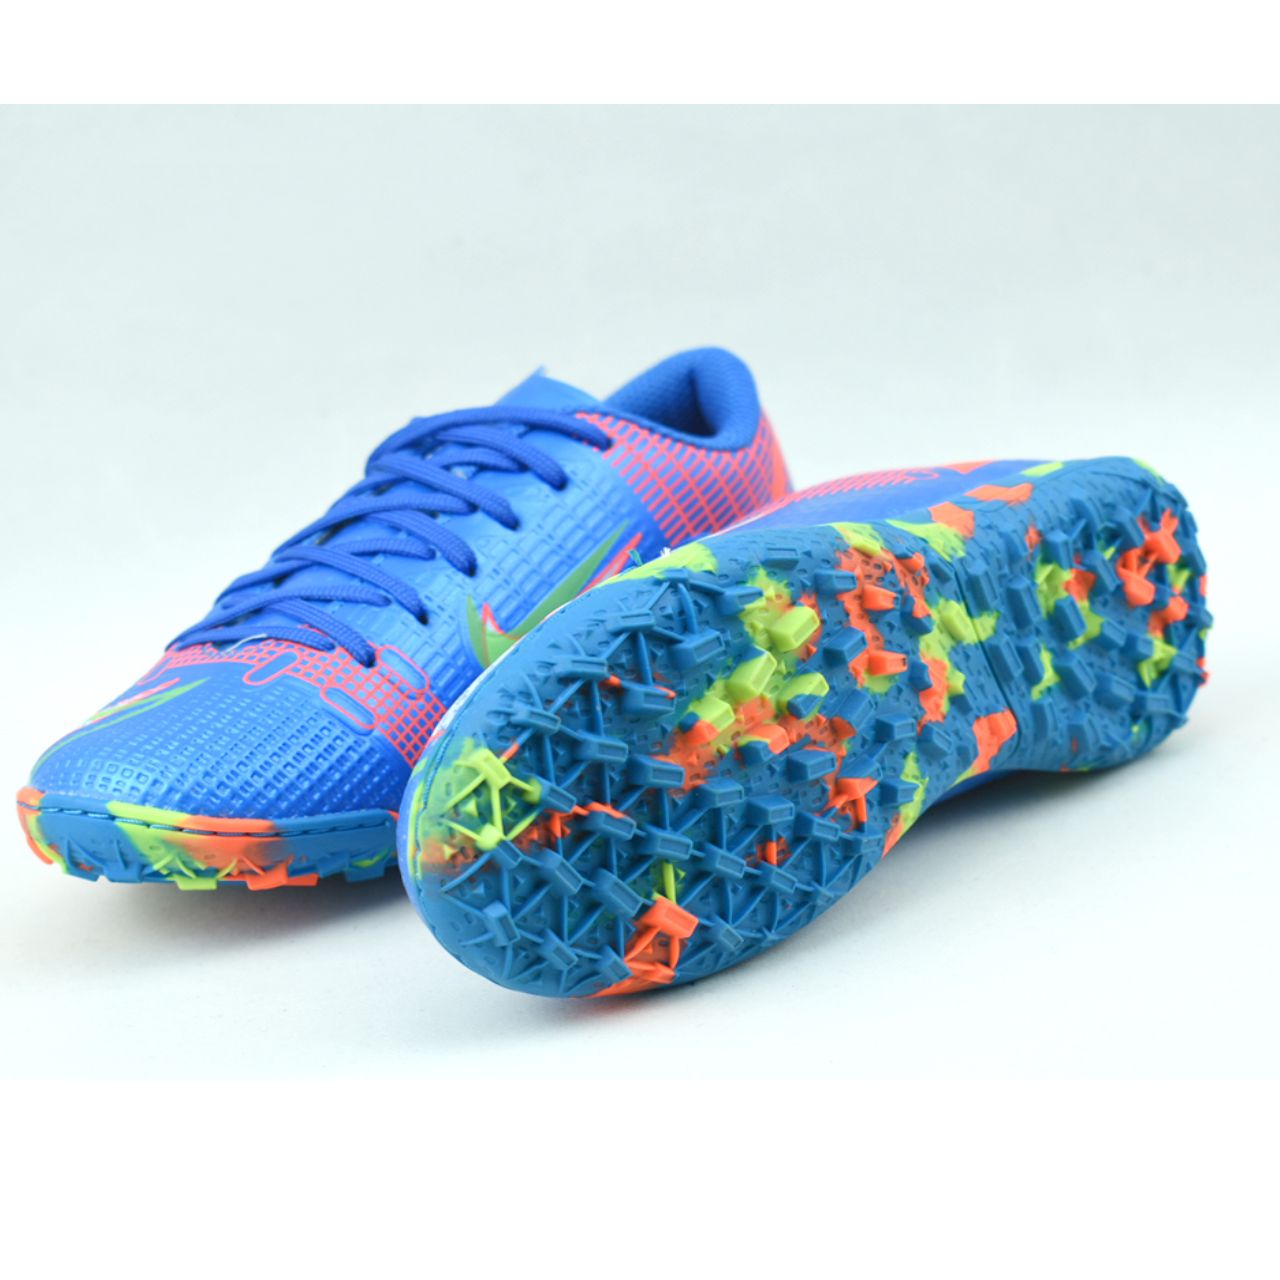 کفش فوتبال بچگانه مدل ویپور کد C-8265 -  - 4